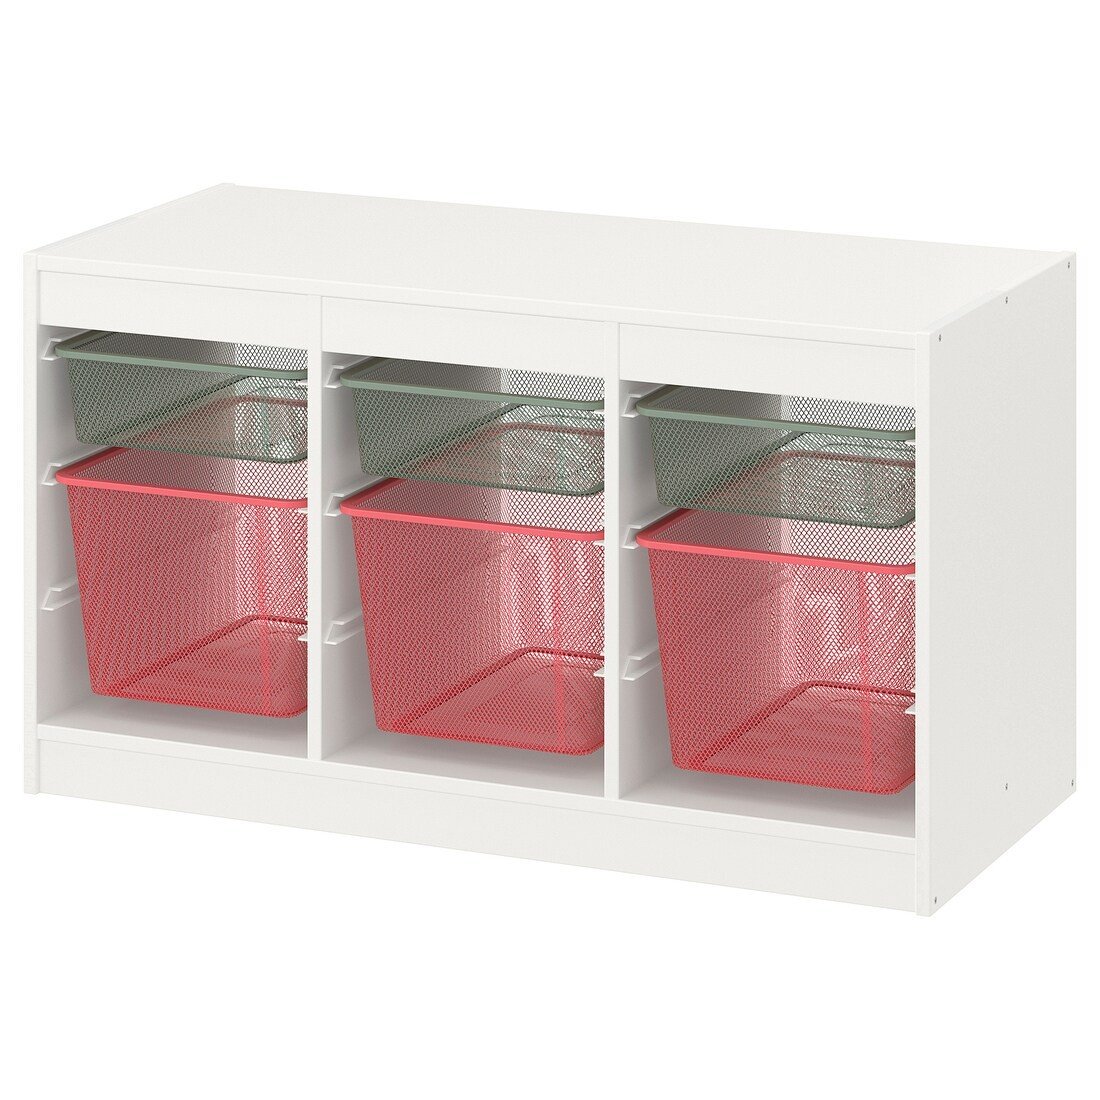 TROFAST ТРУФАСТ Комбинация для хранения + контейнеры, белый светло-зелено-серый / светло-красный, 99x44x56 см